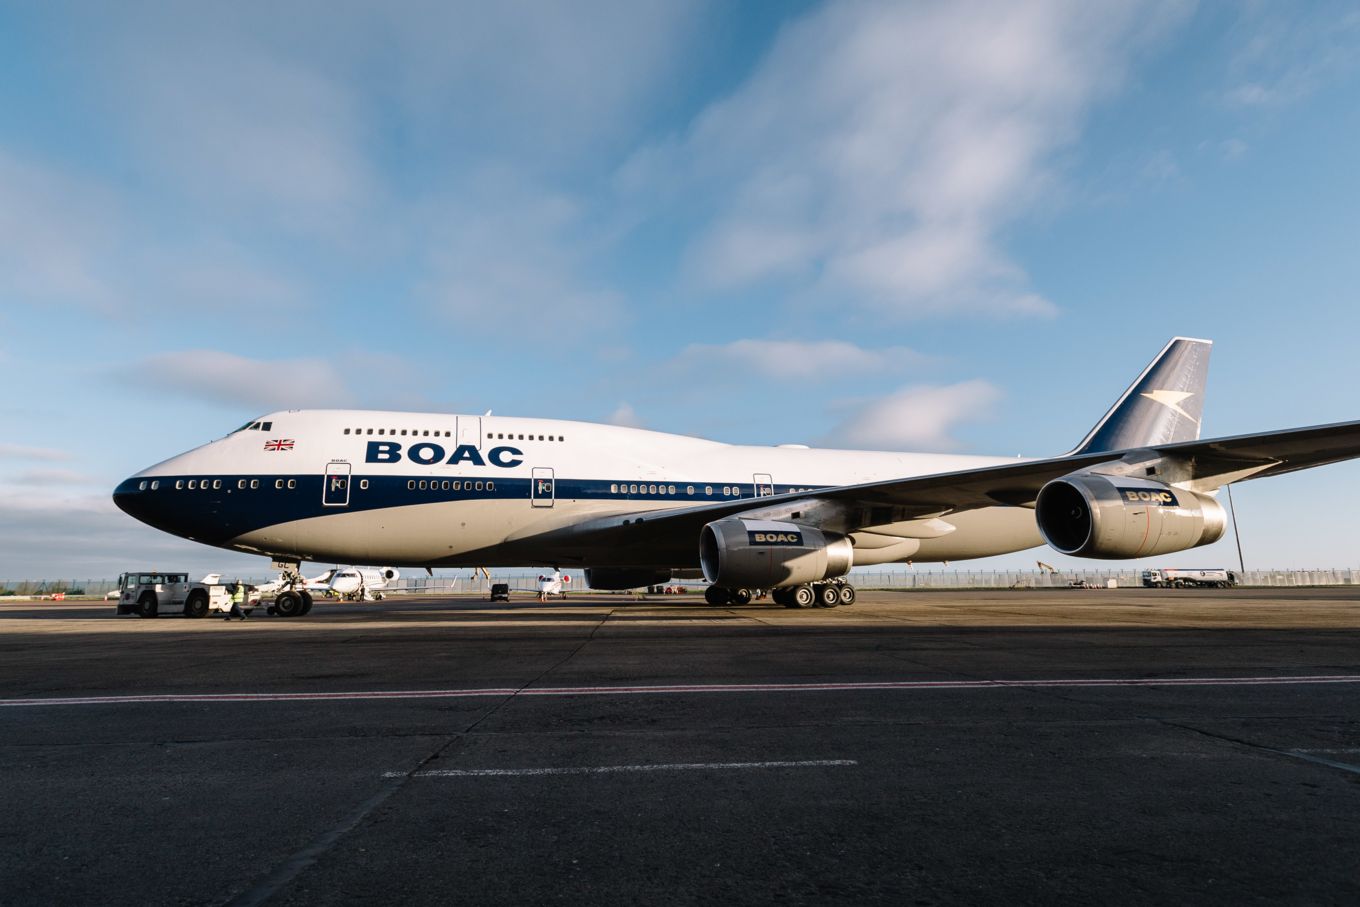 The BOAC-liveried British Airways Boeing 747.